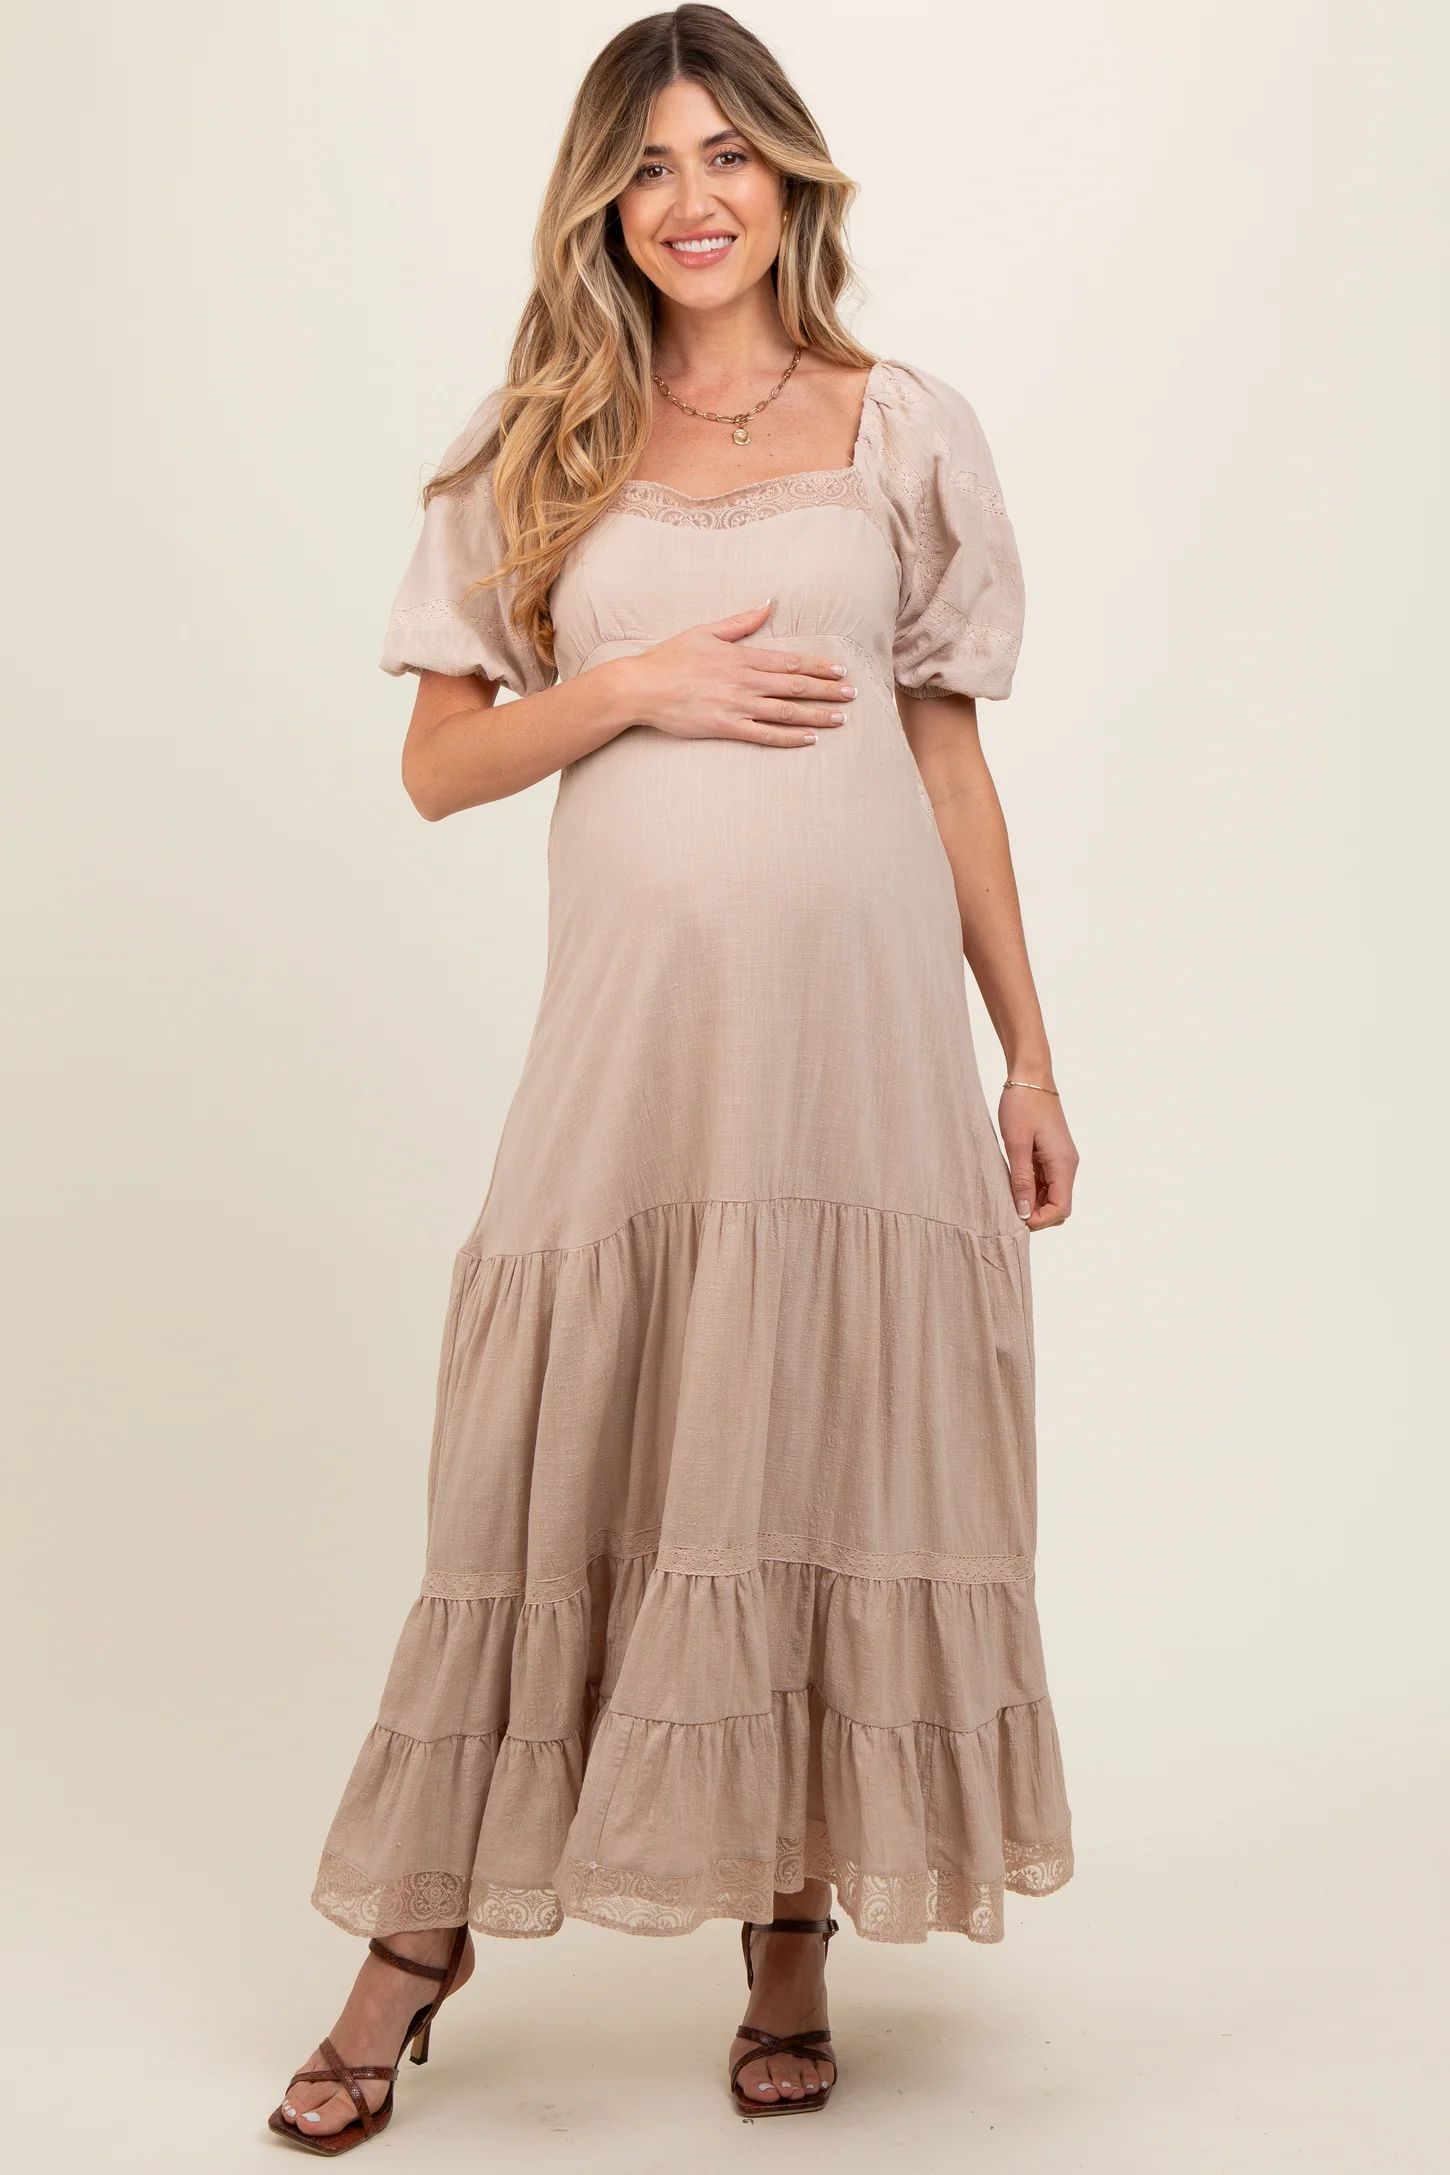 Beige Lace Insert Maternity Maxi Dress | PinkBlush Maternity